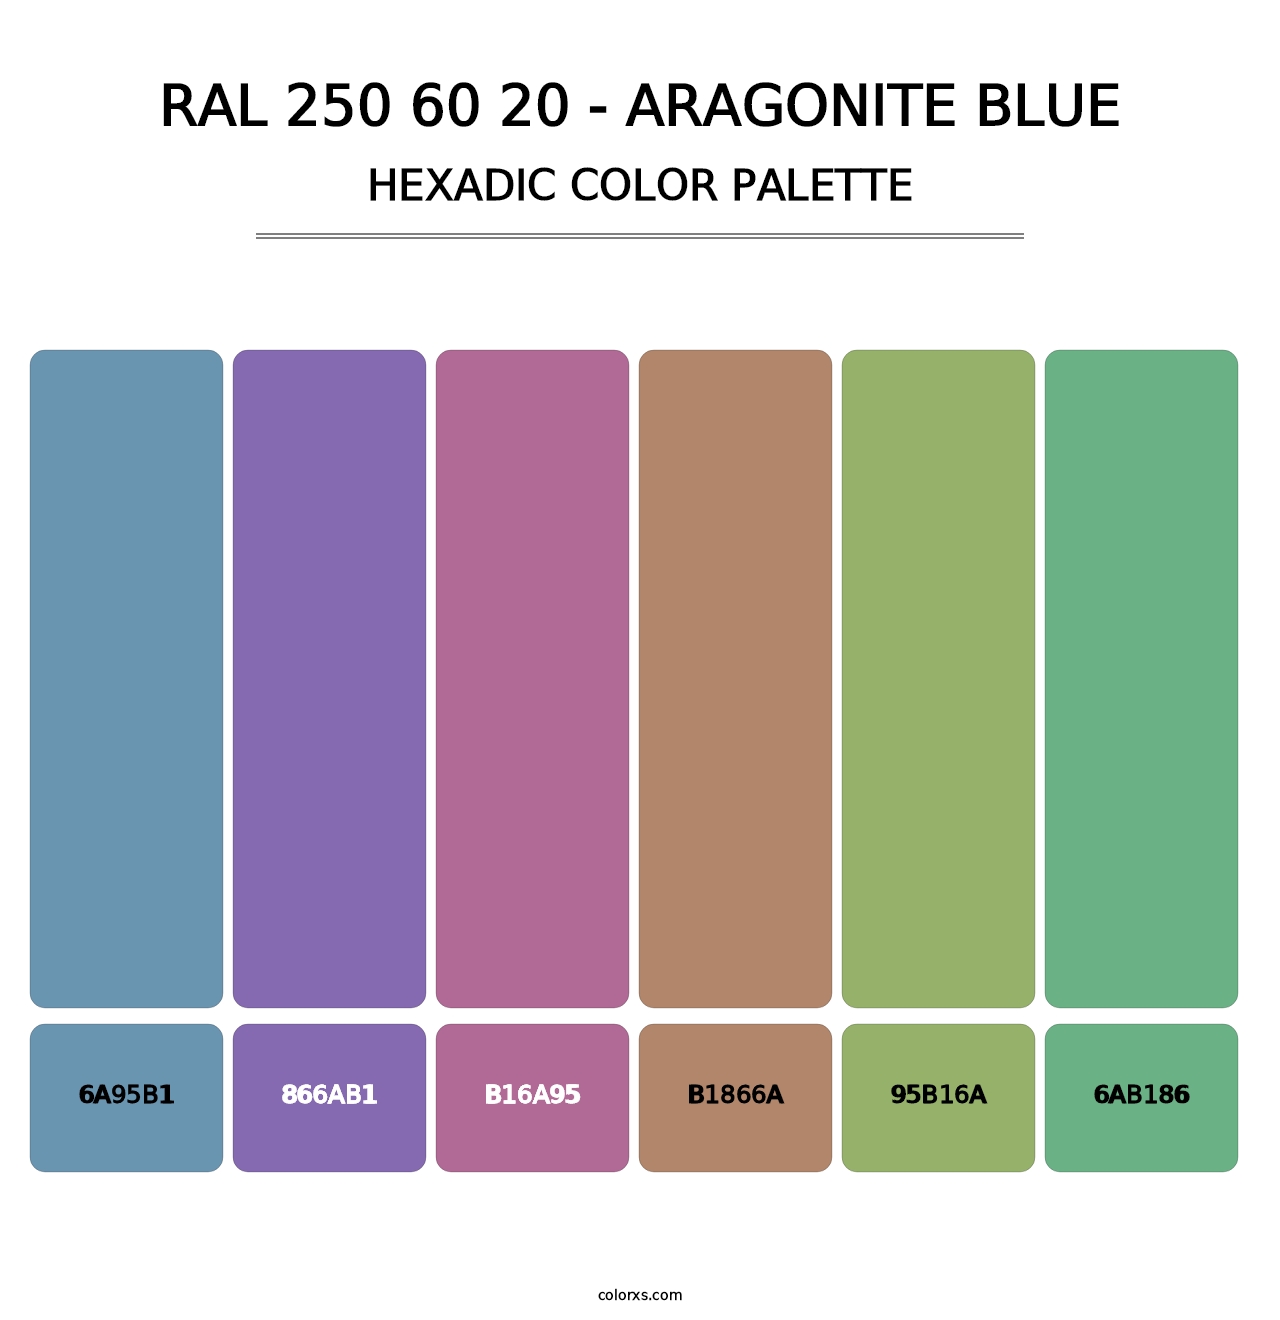 RAL 250 60 20 - Aragonite Blue - Hexadic Color Palette